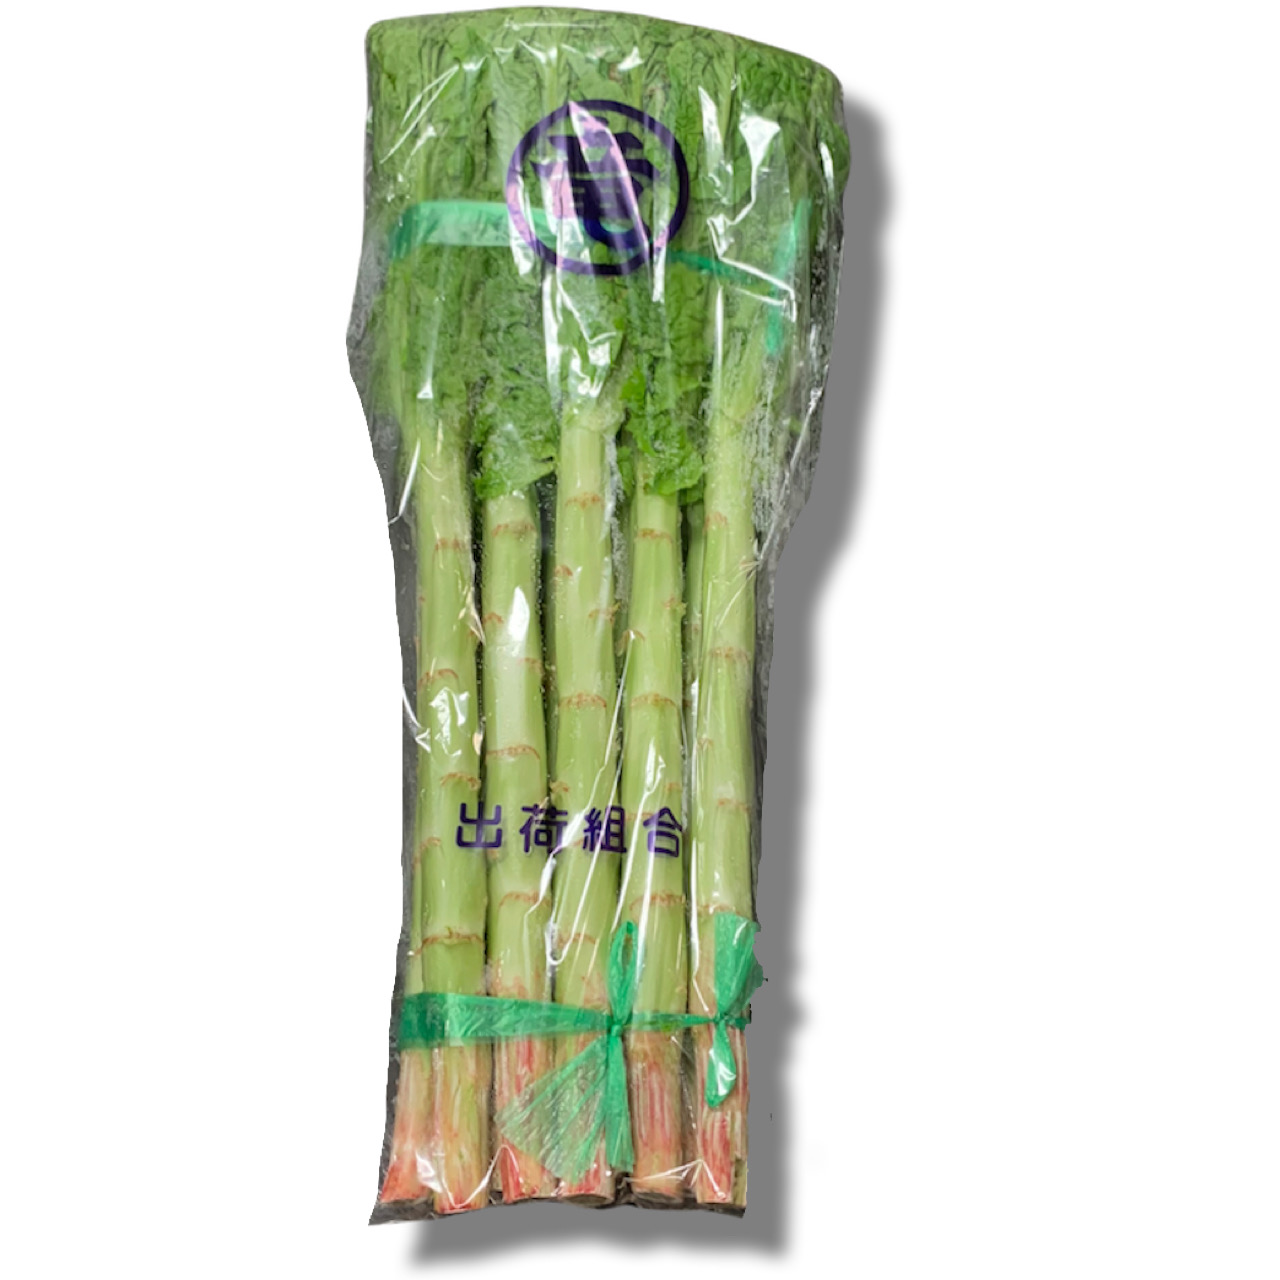 `VgE/Japanese stem lettuce